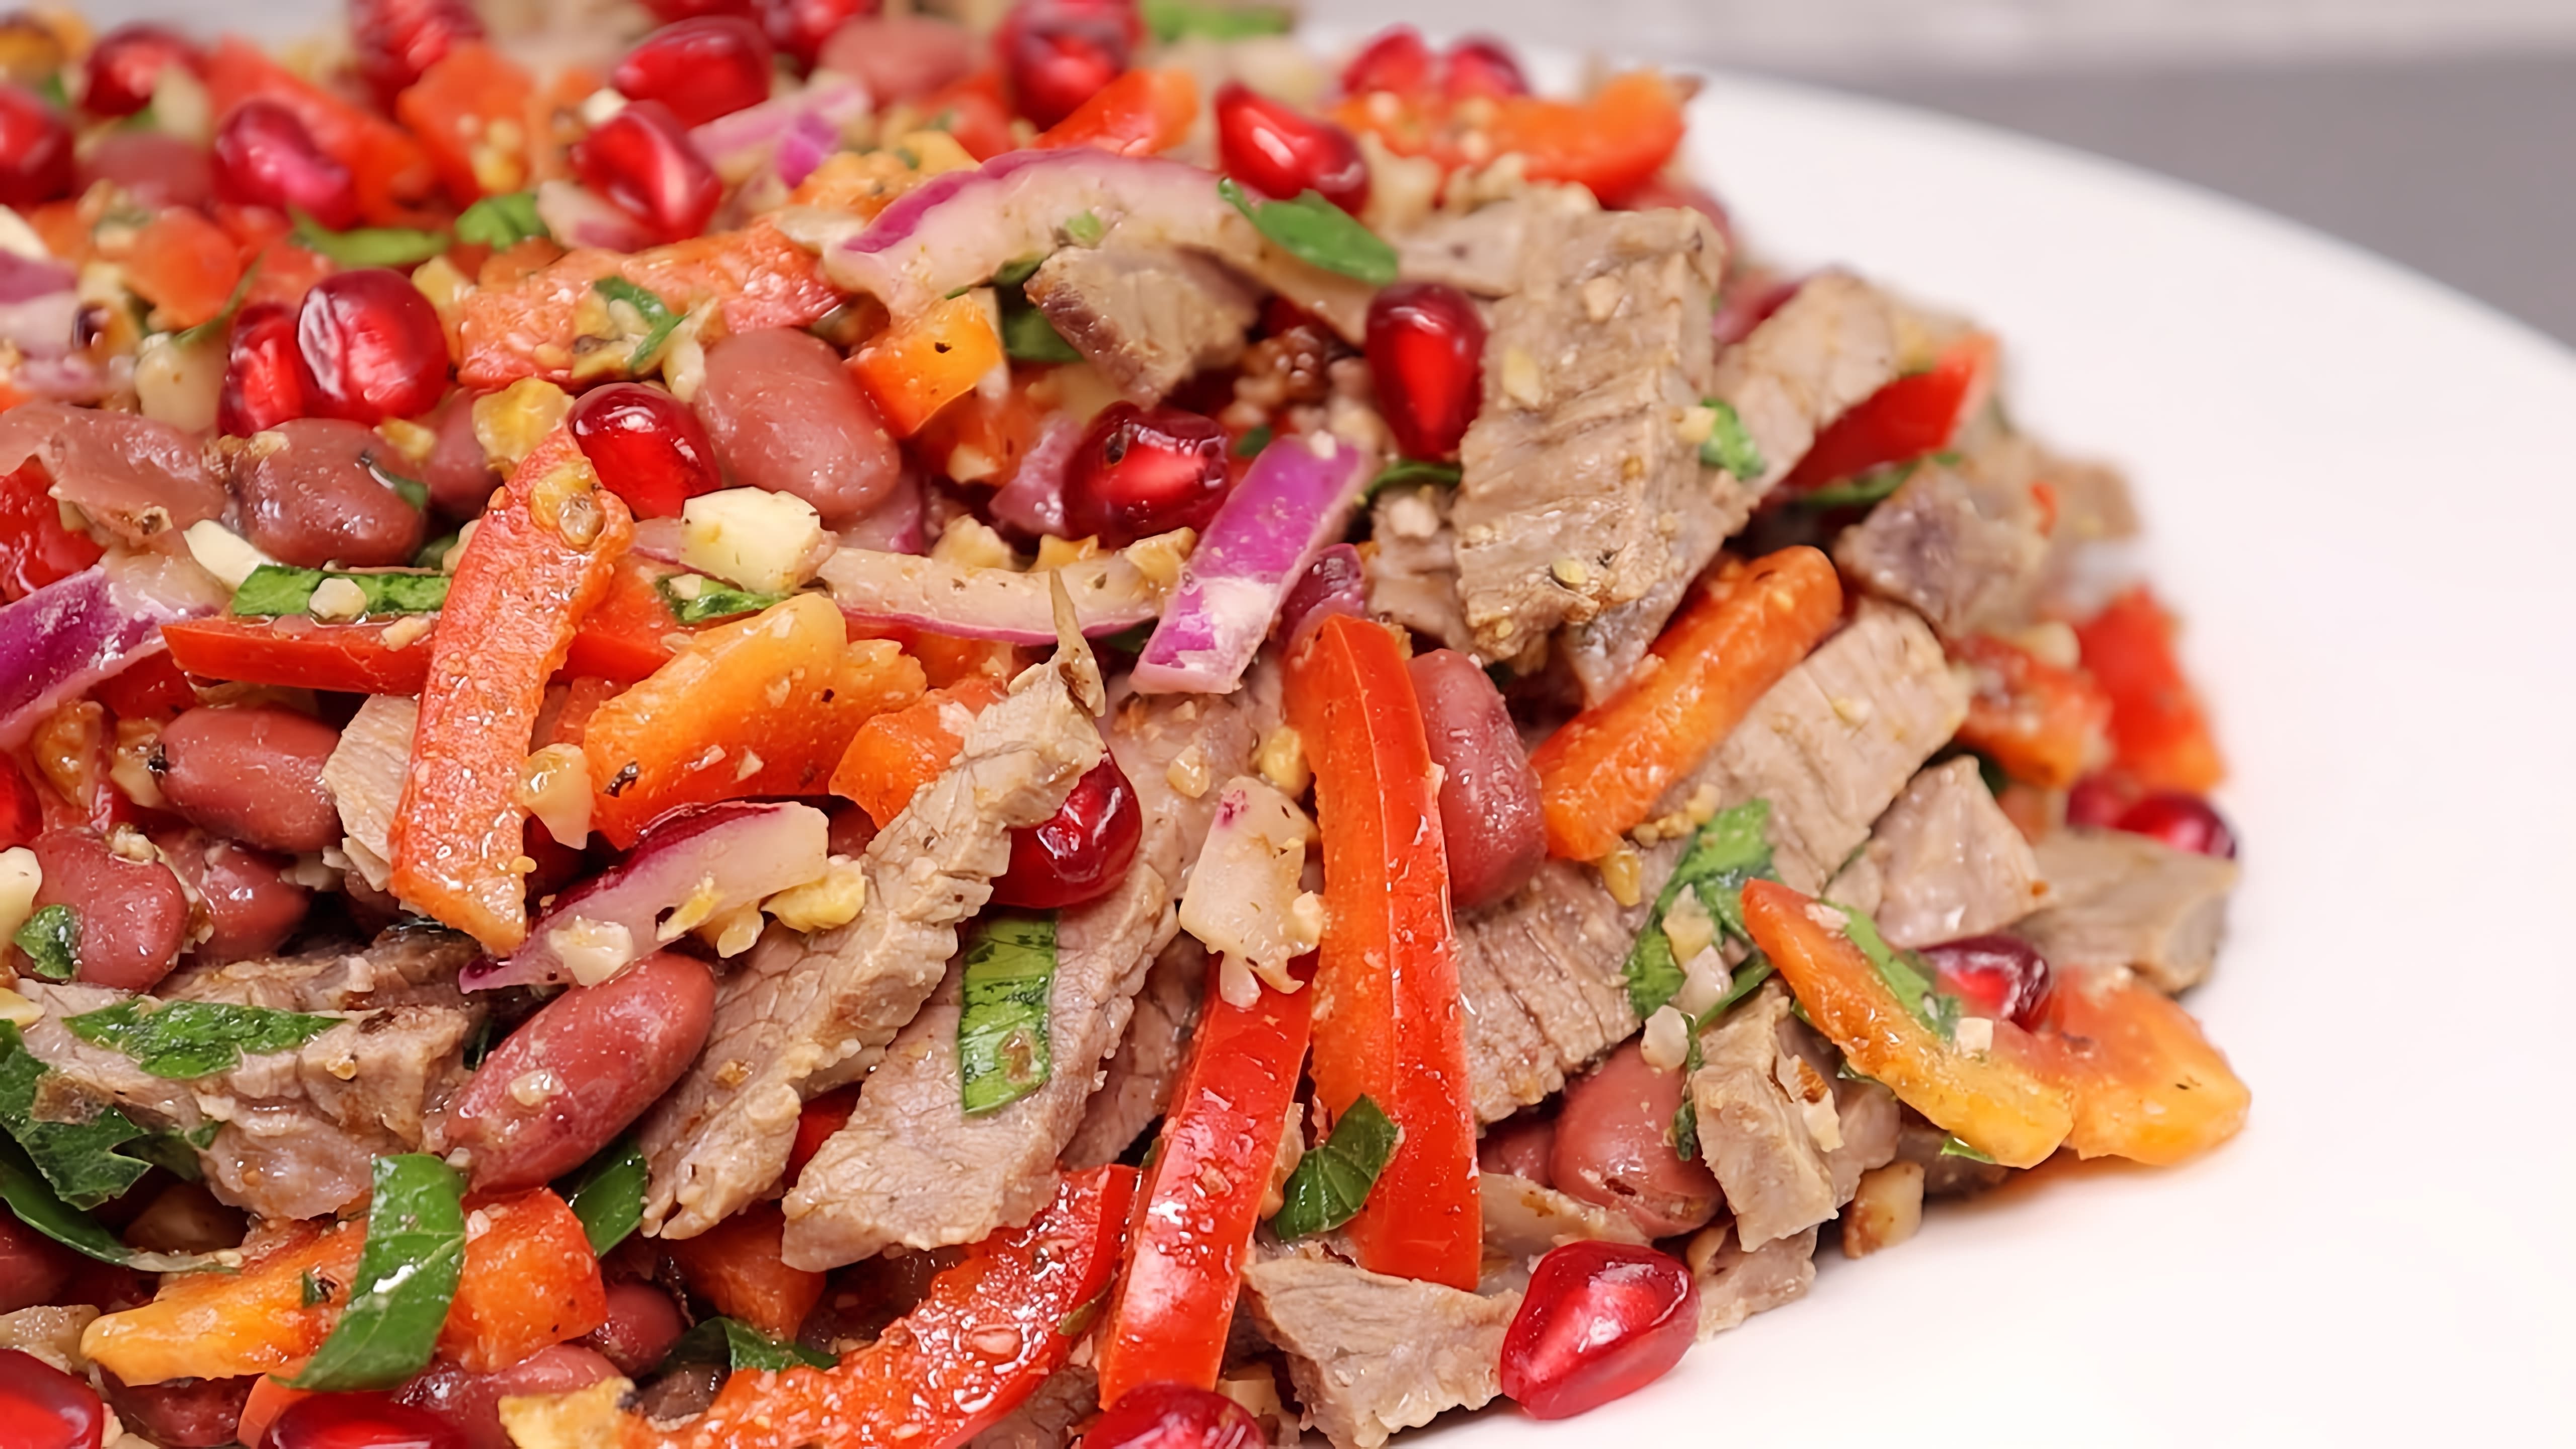 В этом видео демонстрируется рецепт мясного салата "Тбилиси" без майонеза, который можно приготовить на новогодний стол